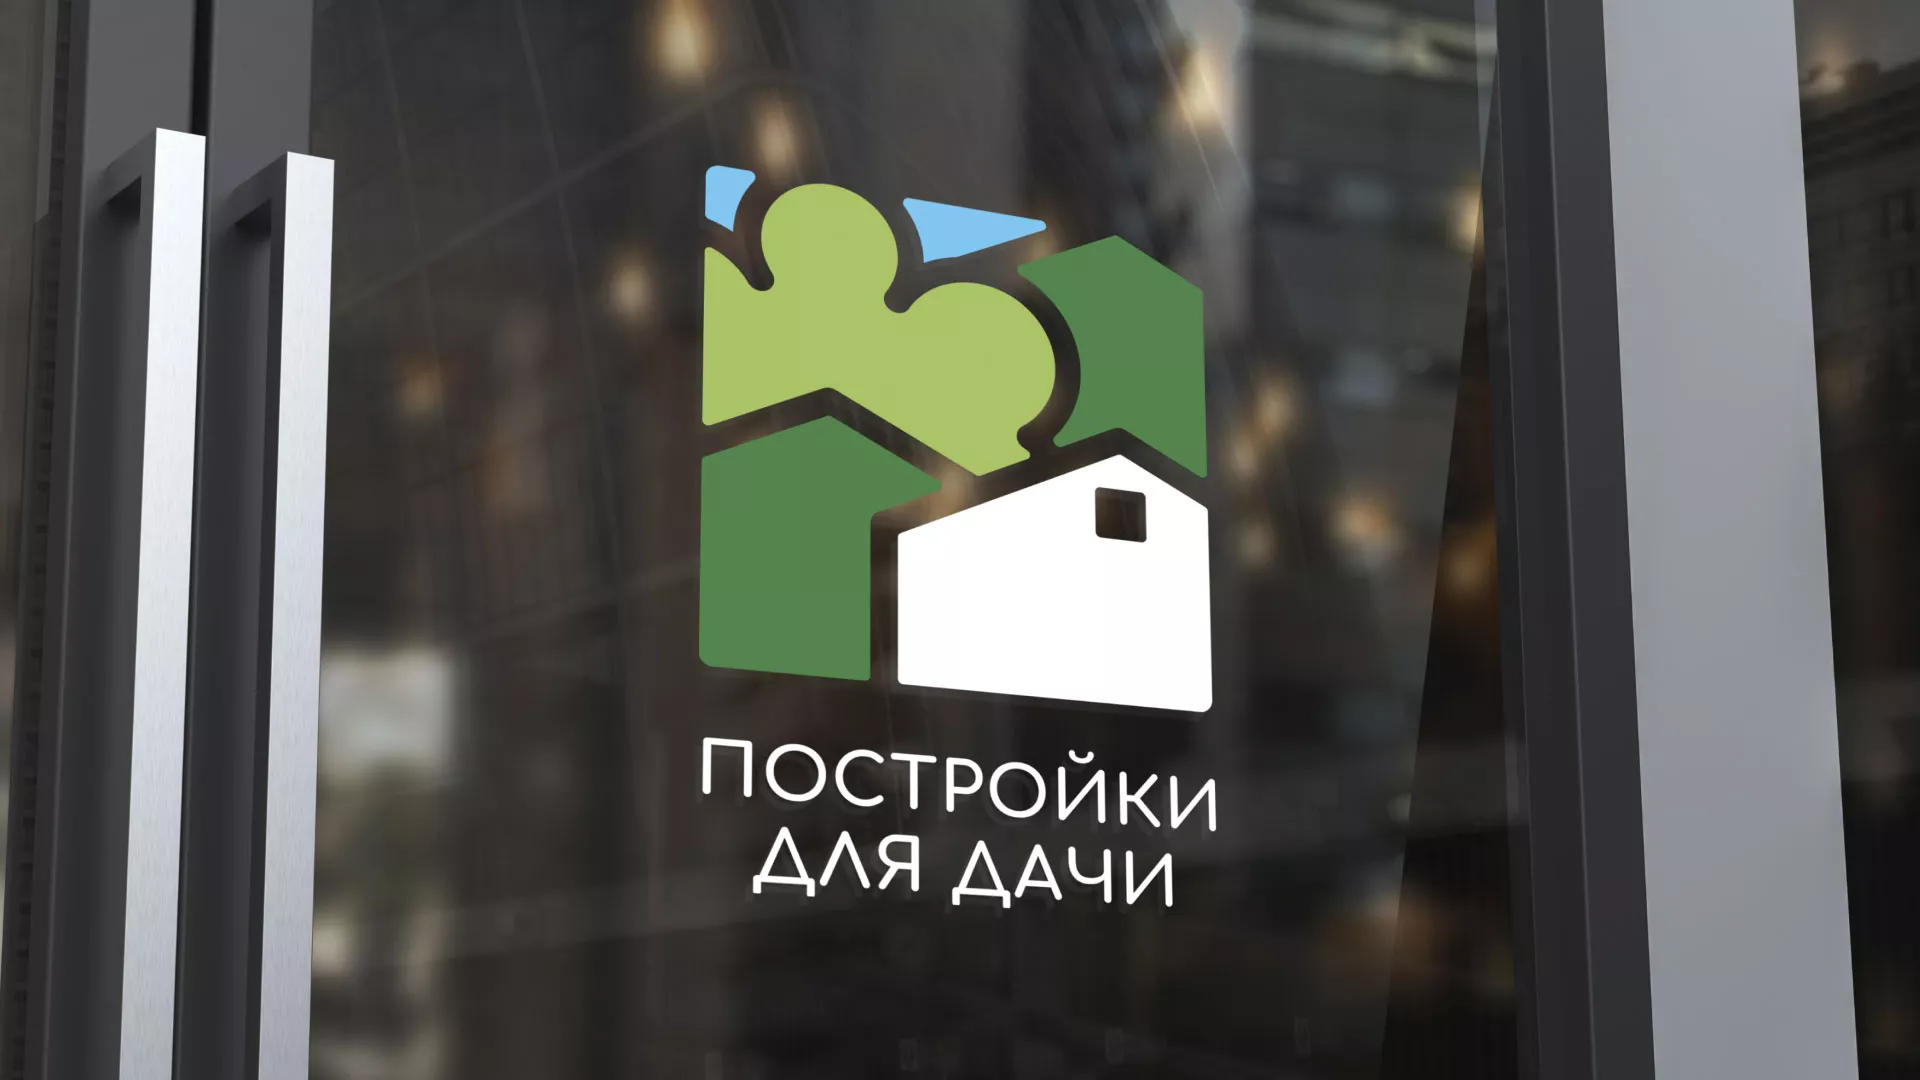 Разработка логотипа в Лыткарино для компании «Постройки для дачи»